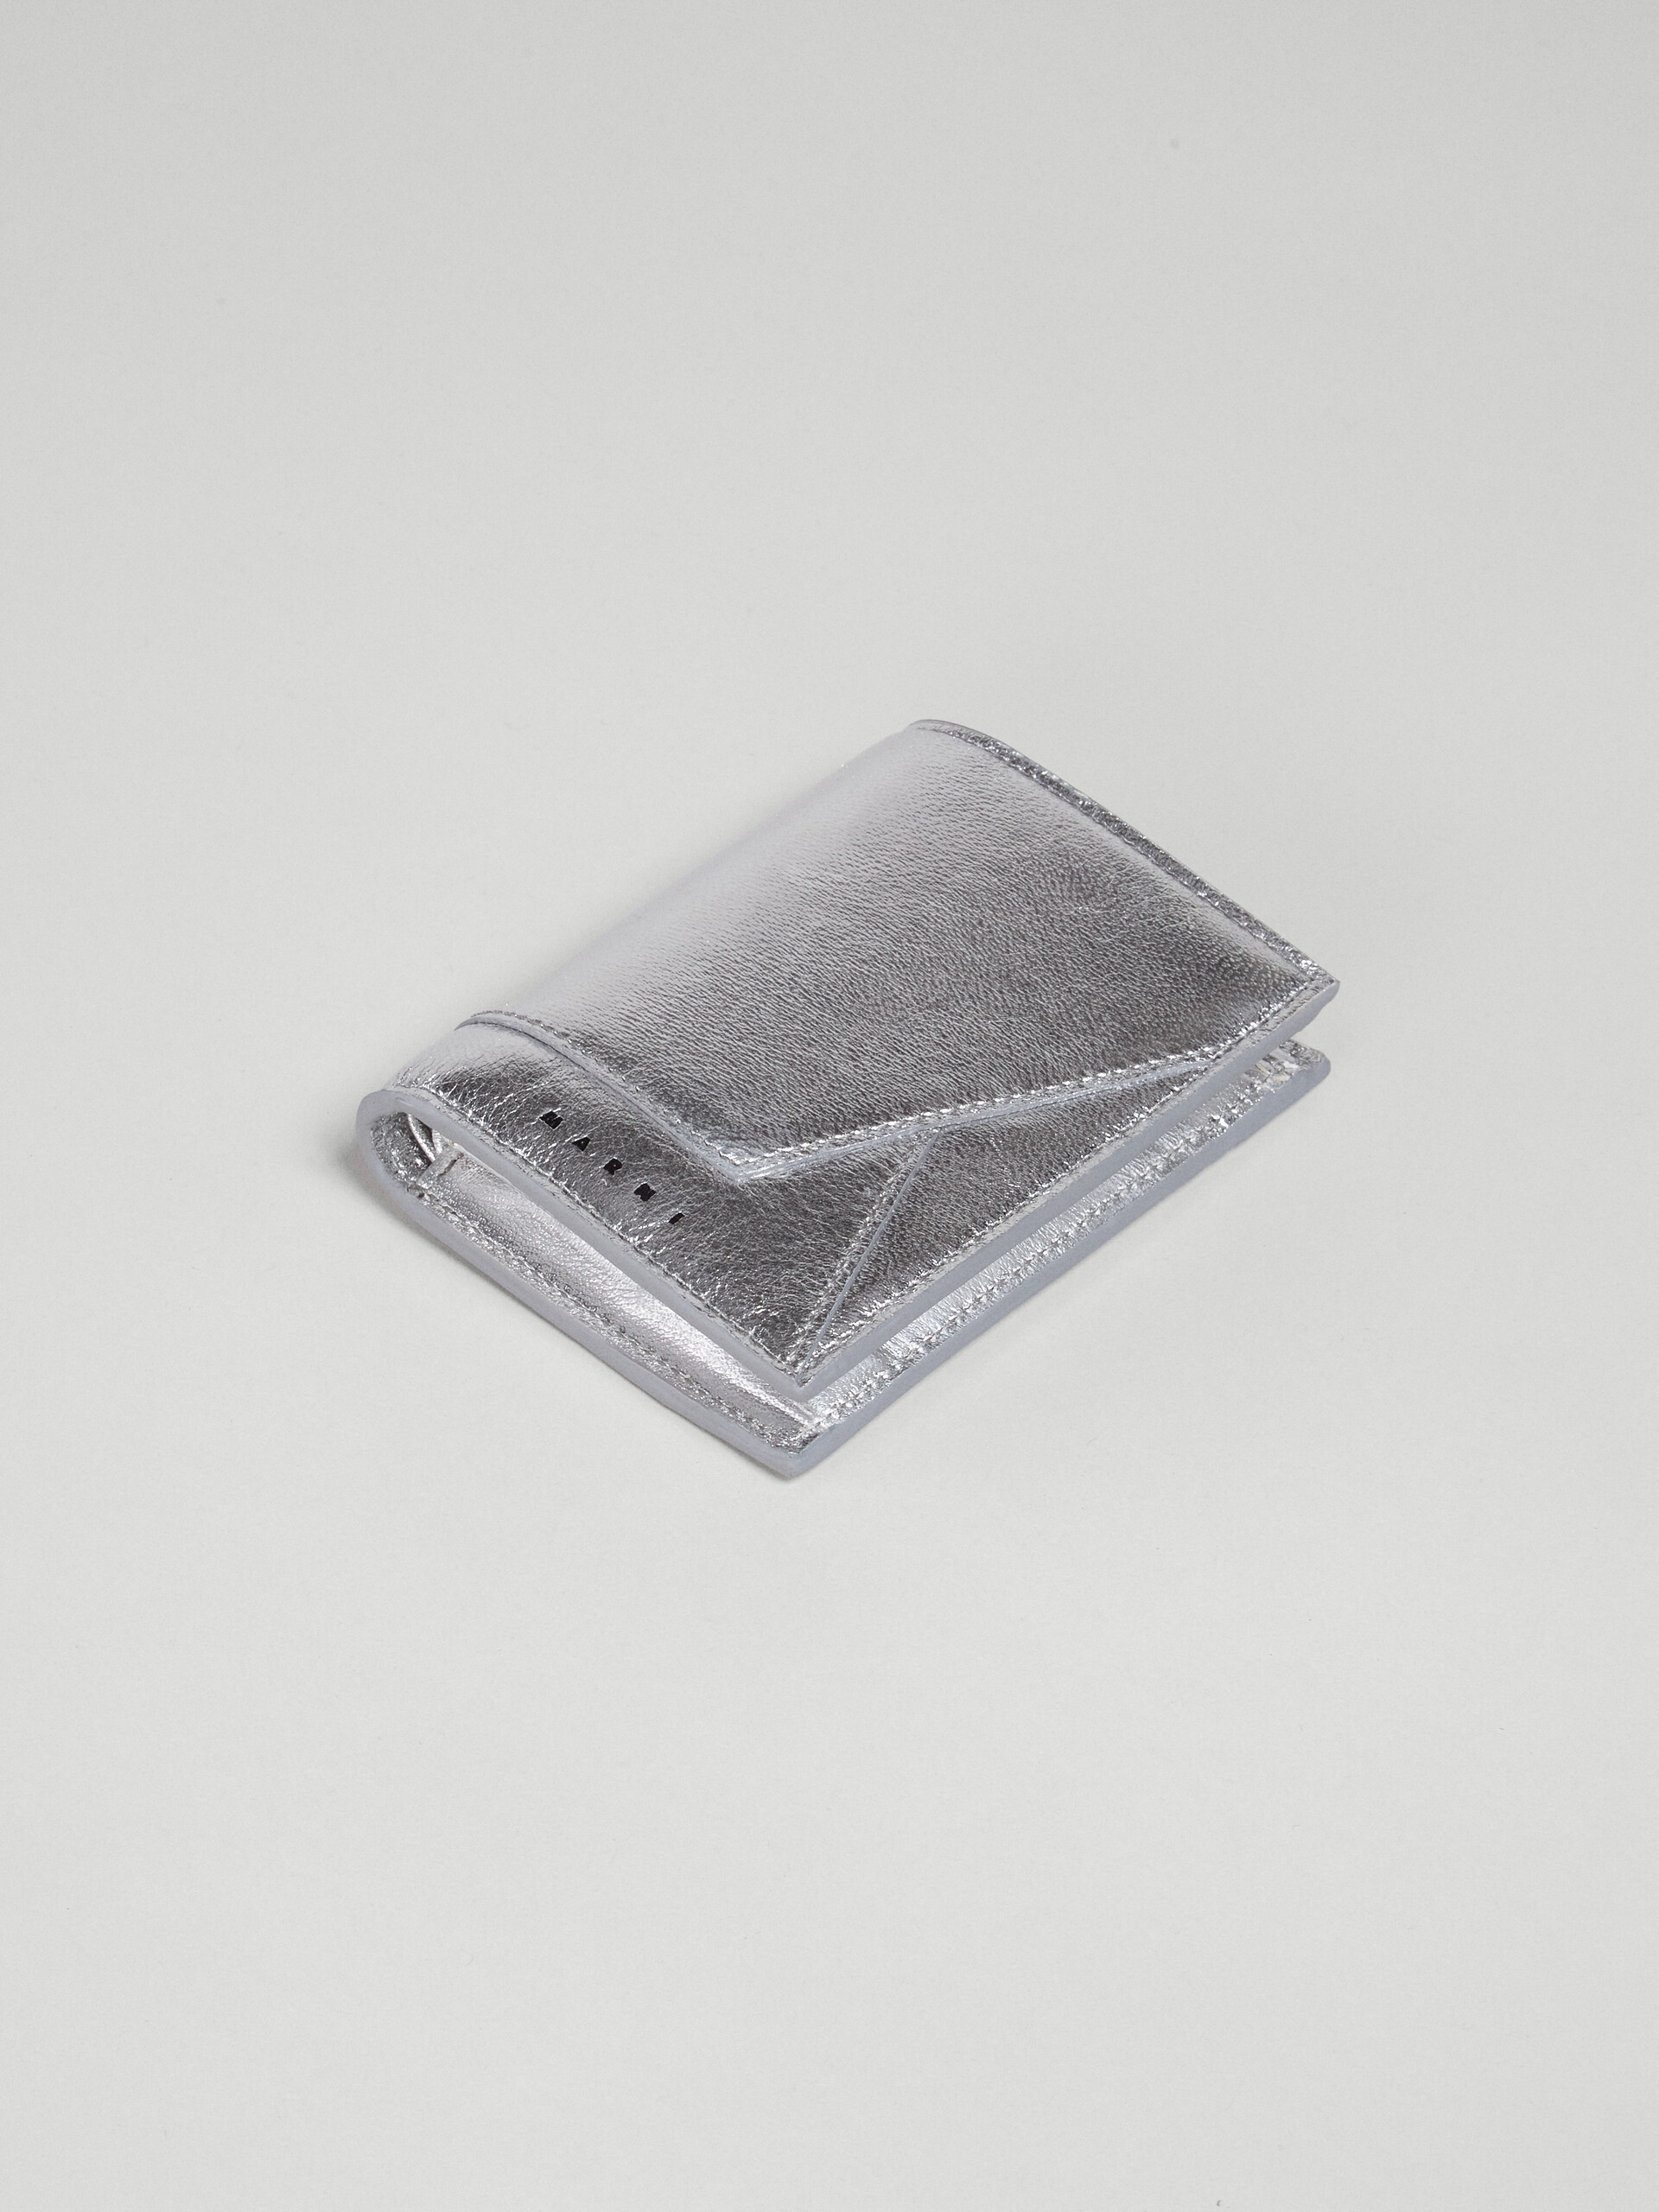 シルバーメタリック調 ナッパレザー二つ折りウォレット - 財布 - Image 5